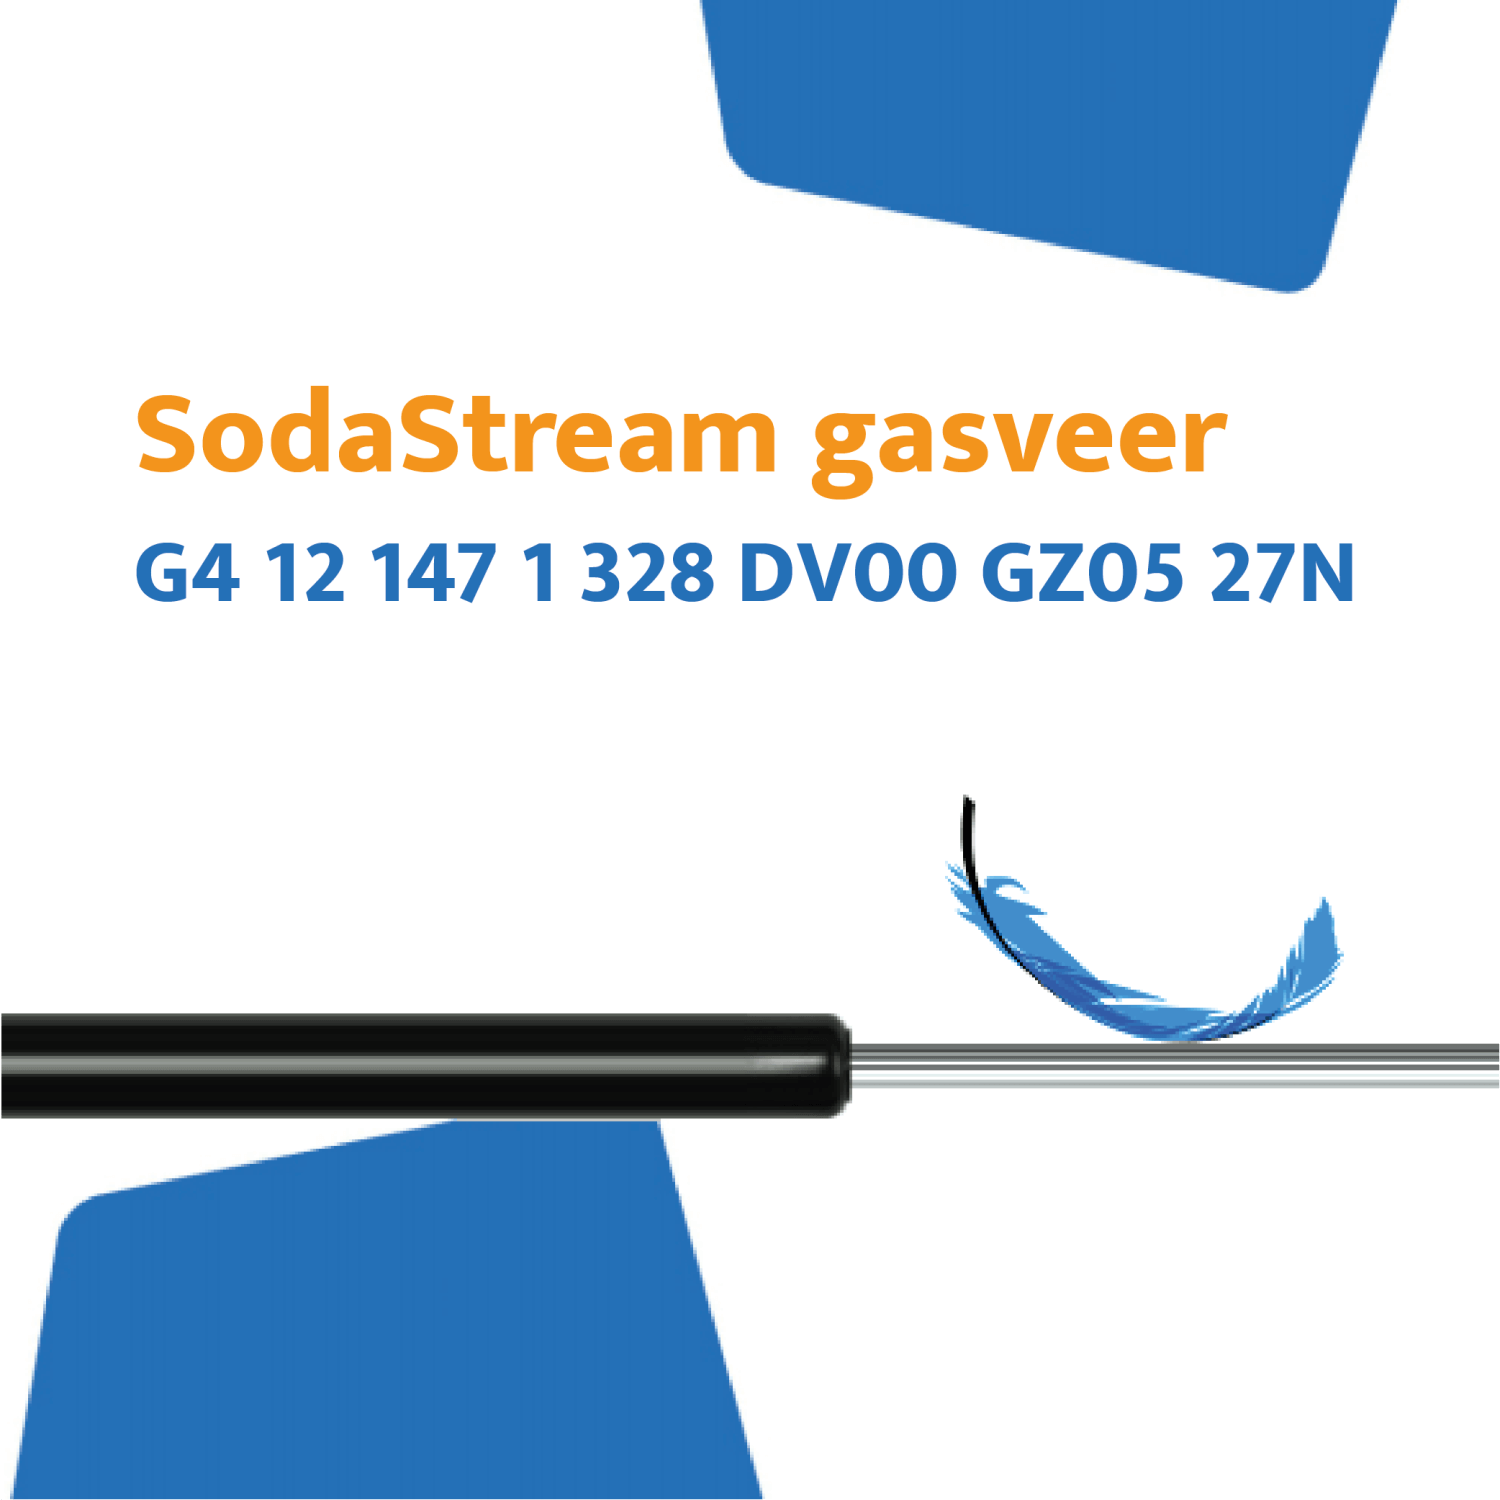 SodaStream gasveer G4 12 147 1 328 DV00 GZ05 27N